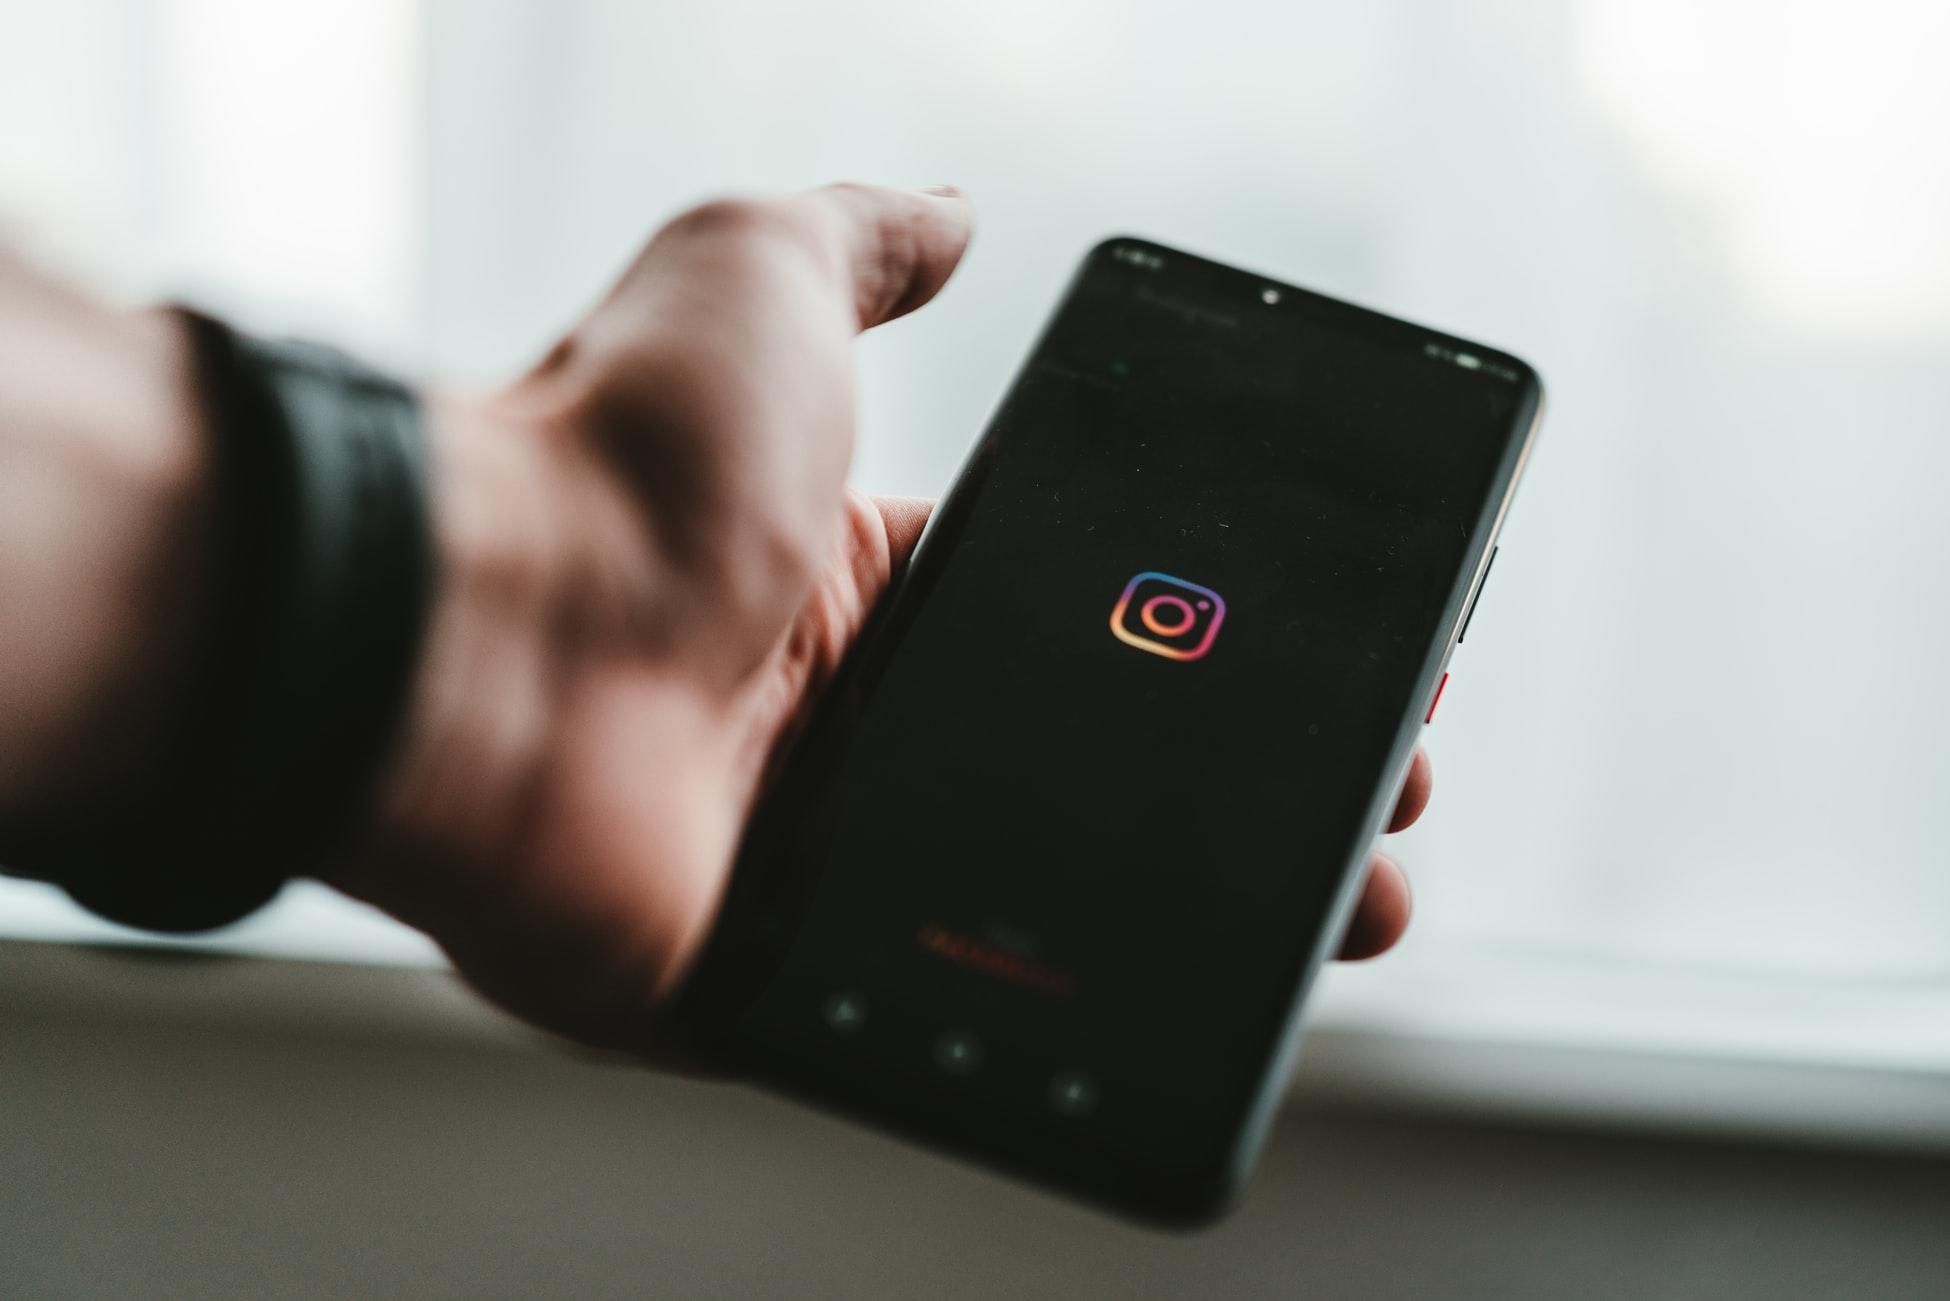 Instagram ошибочно спрятал  лайки пользователи возмущены - Техно 24